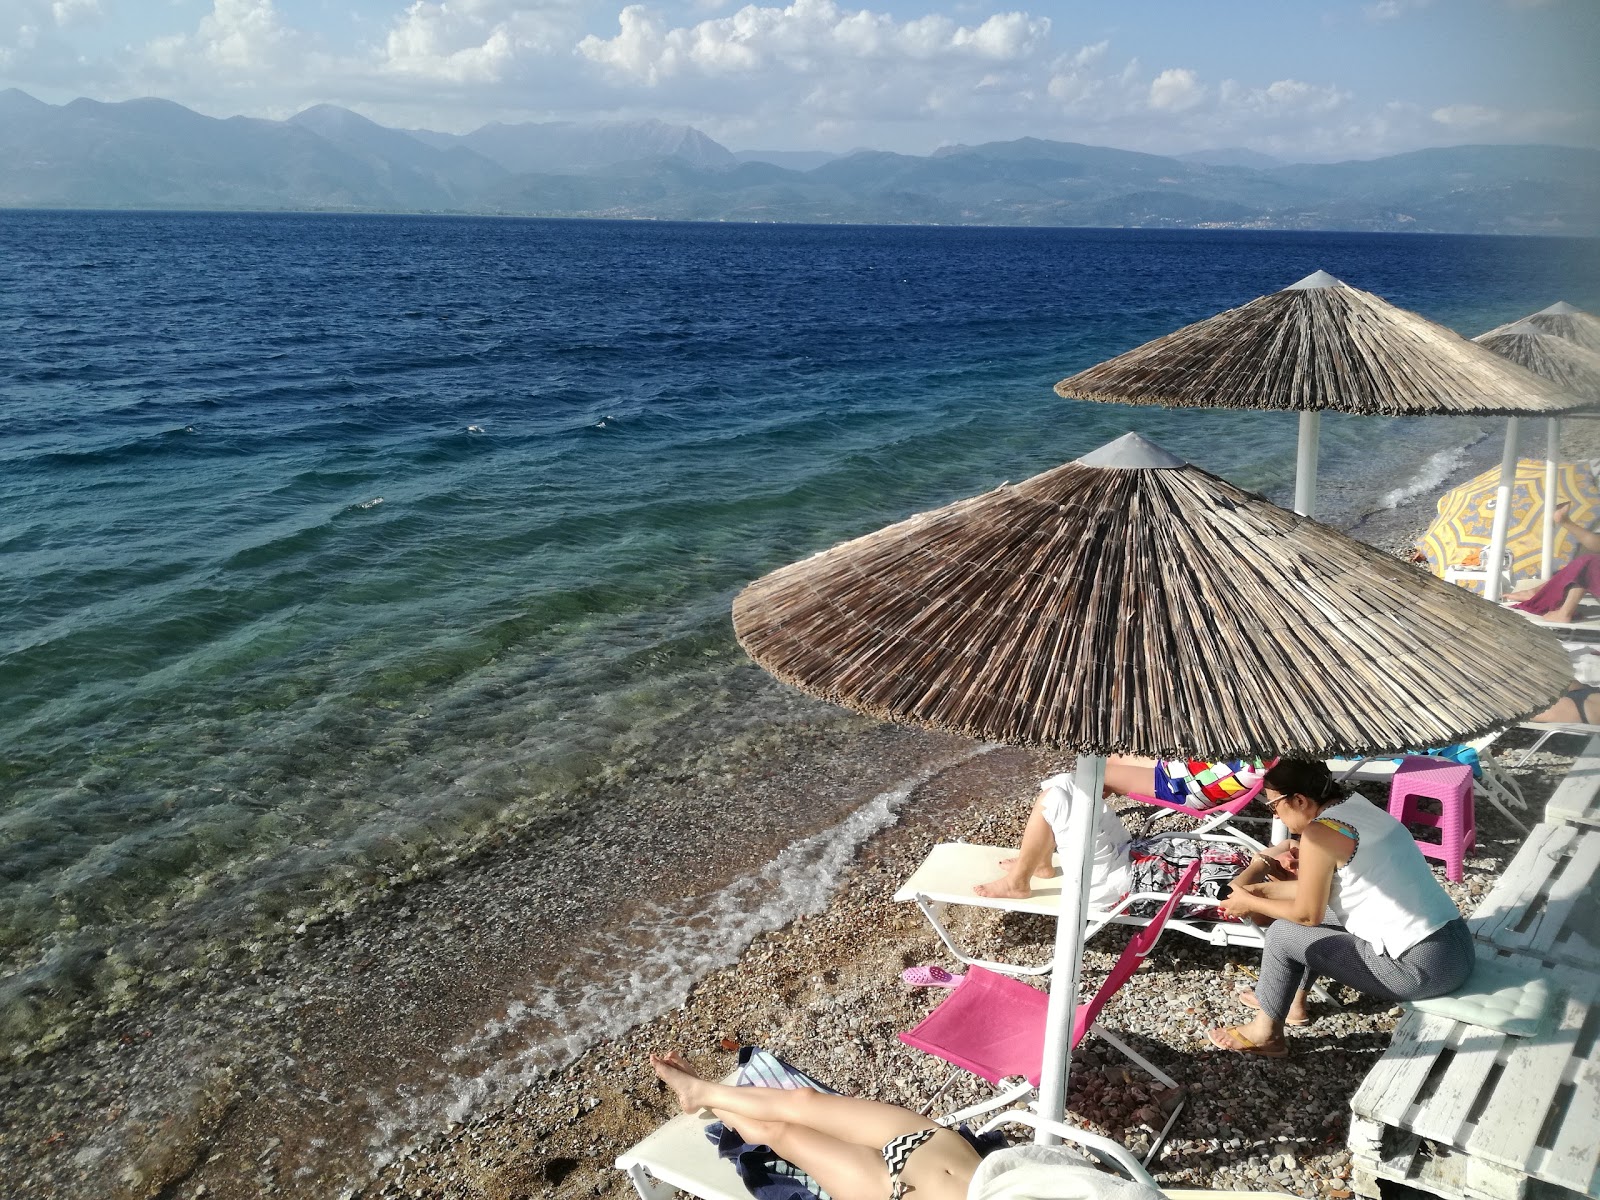 Zdjęcie Agamemnonos beach z poziomem czystości wysoki